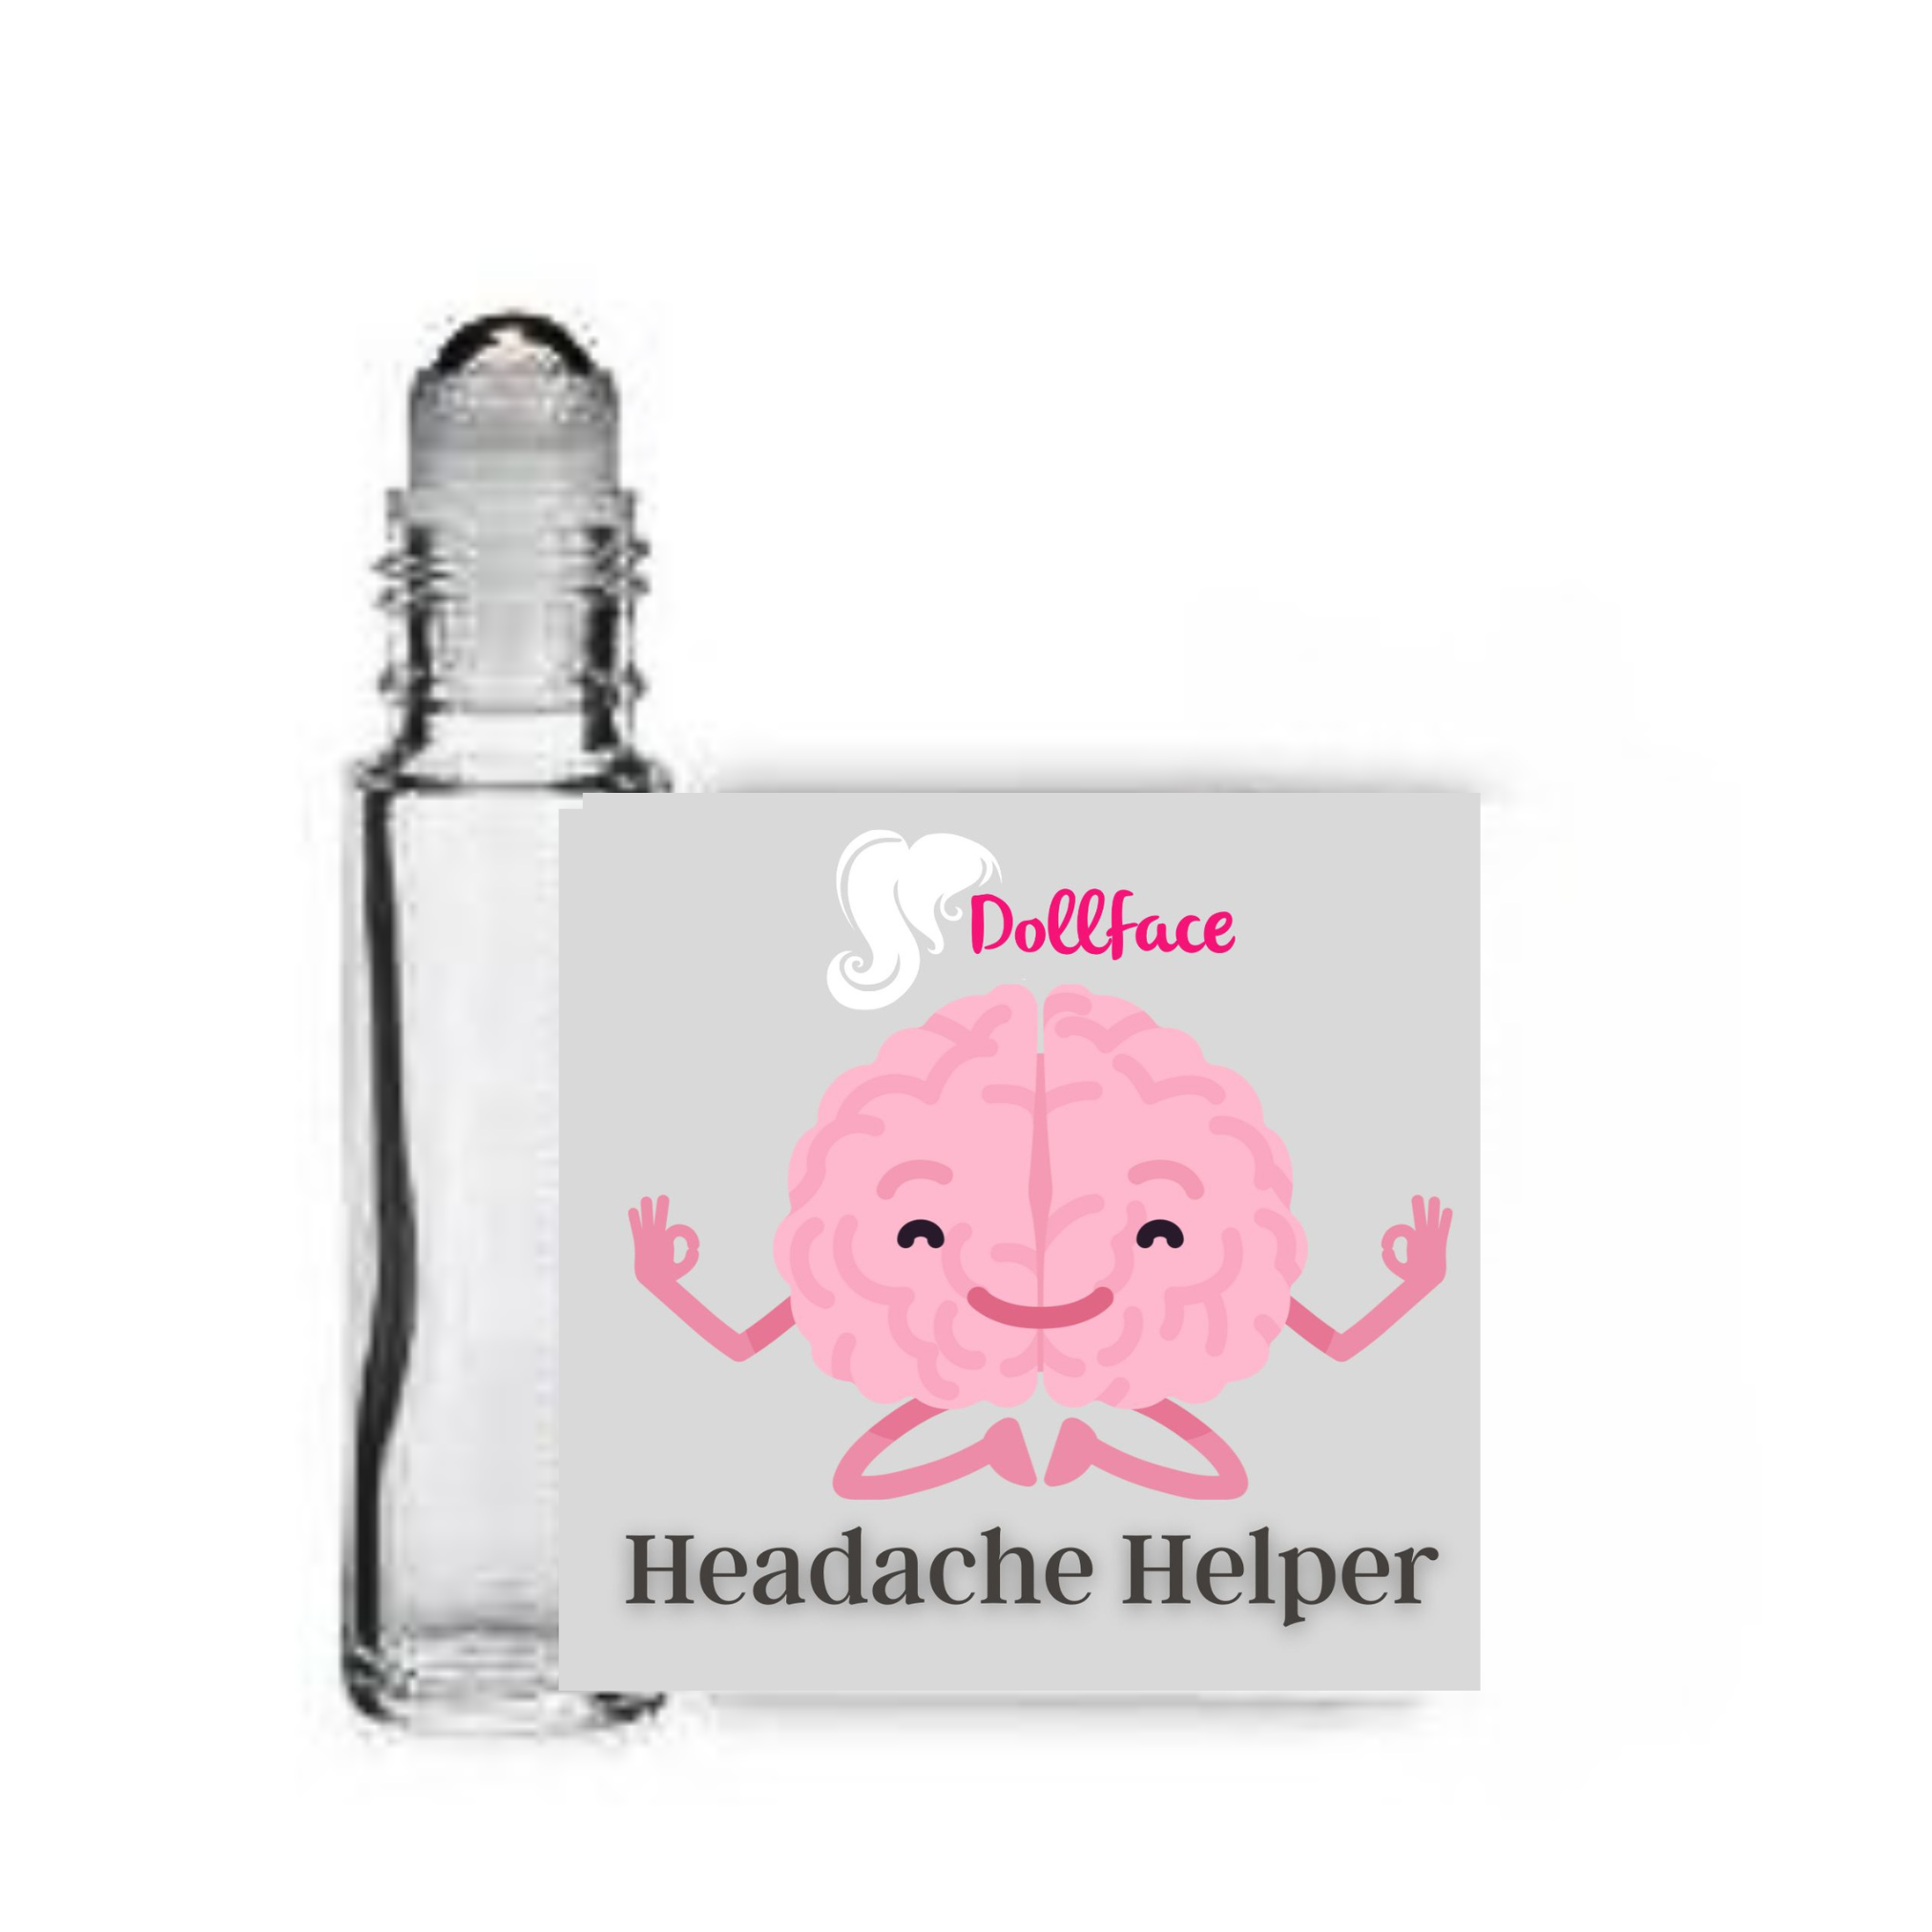 Headache Helper tube.png